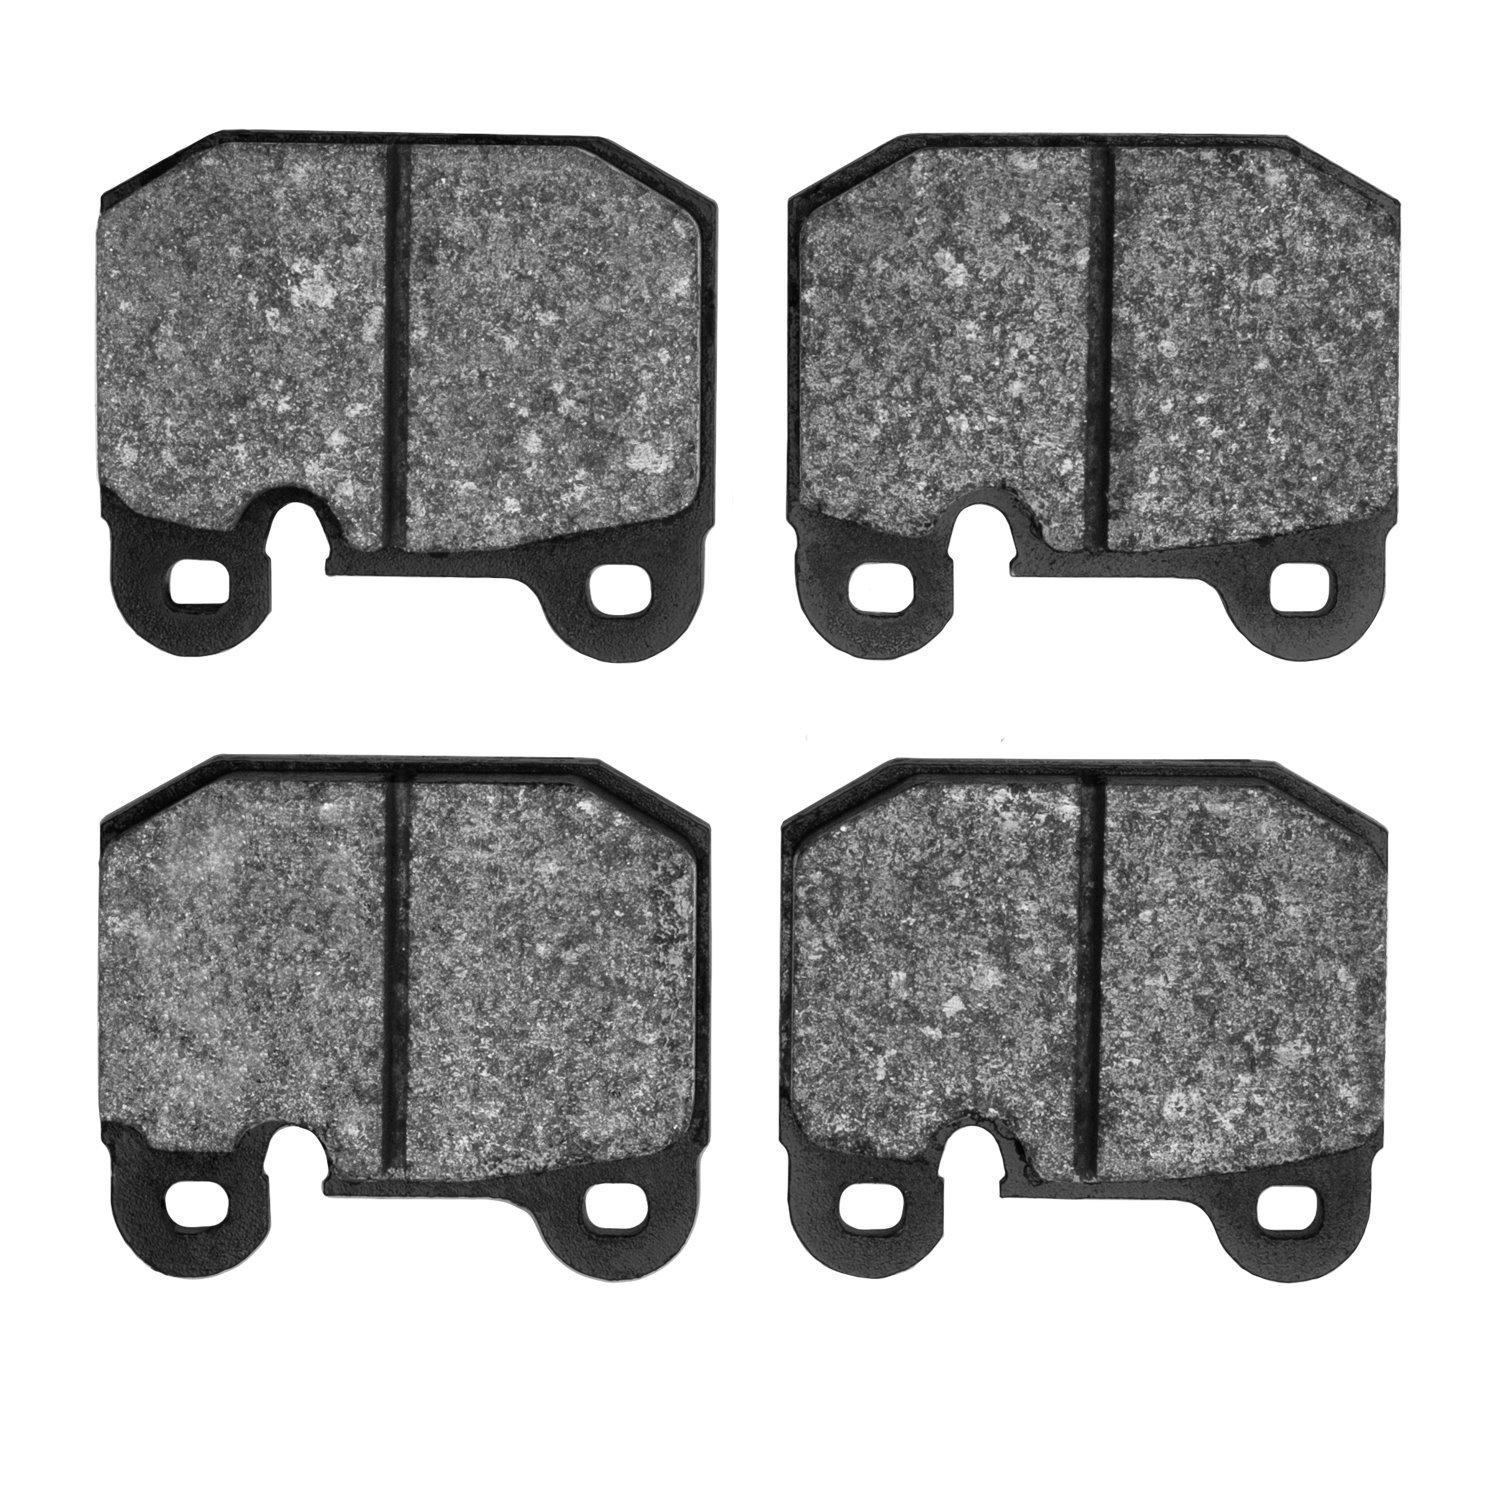 Ceramic Brake Pads, 1974-2011 Fits Multiple Makes/Models, Position: Front